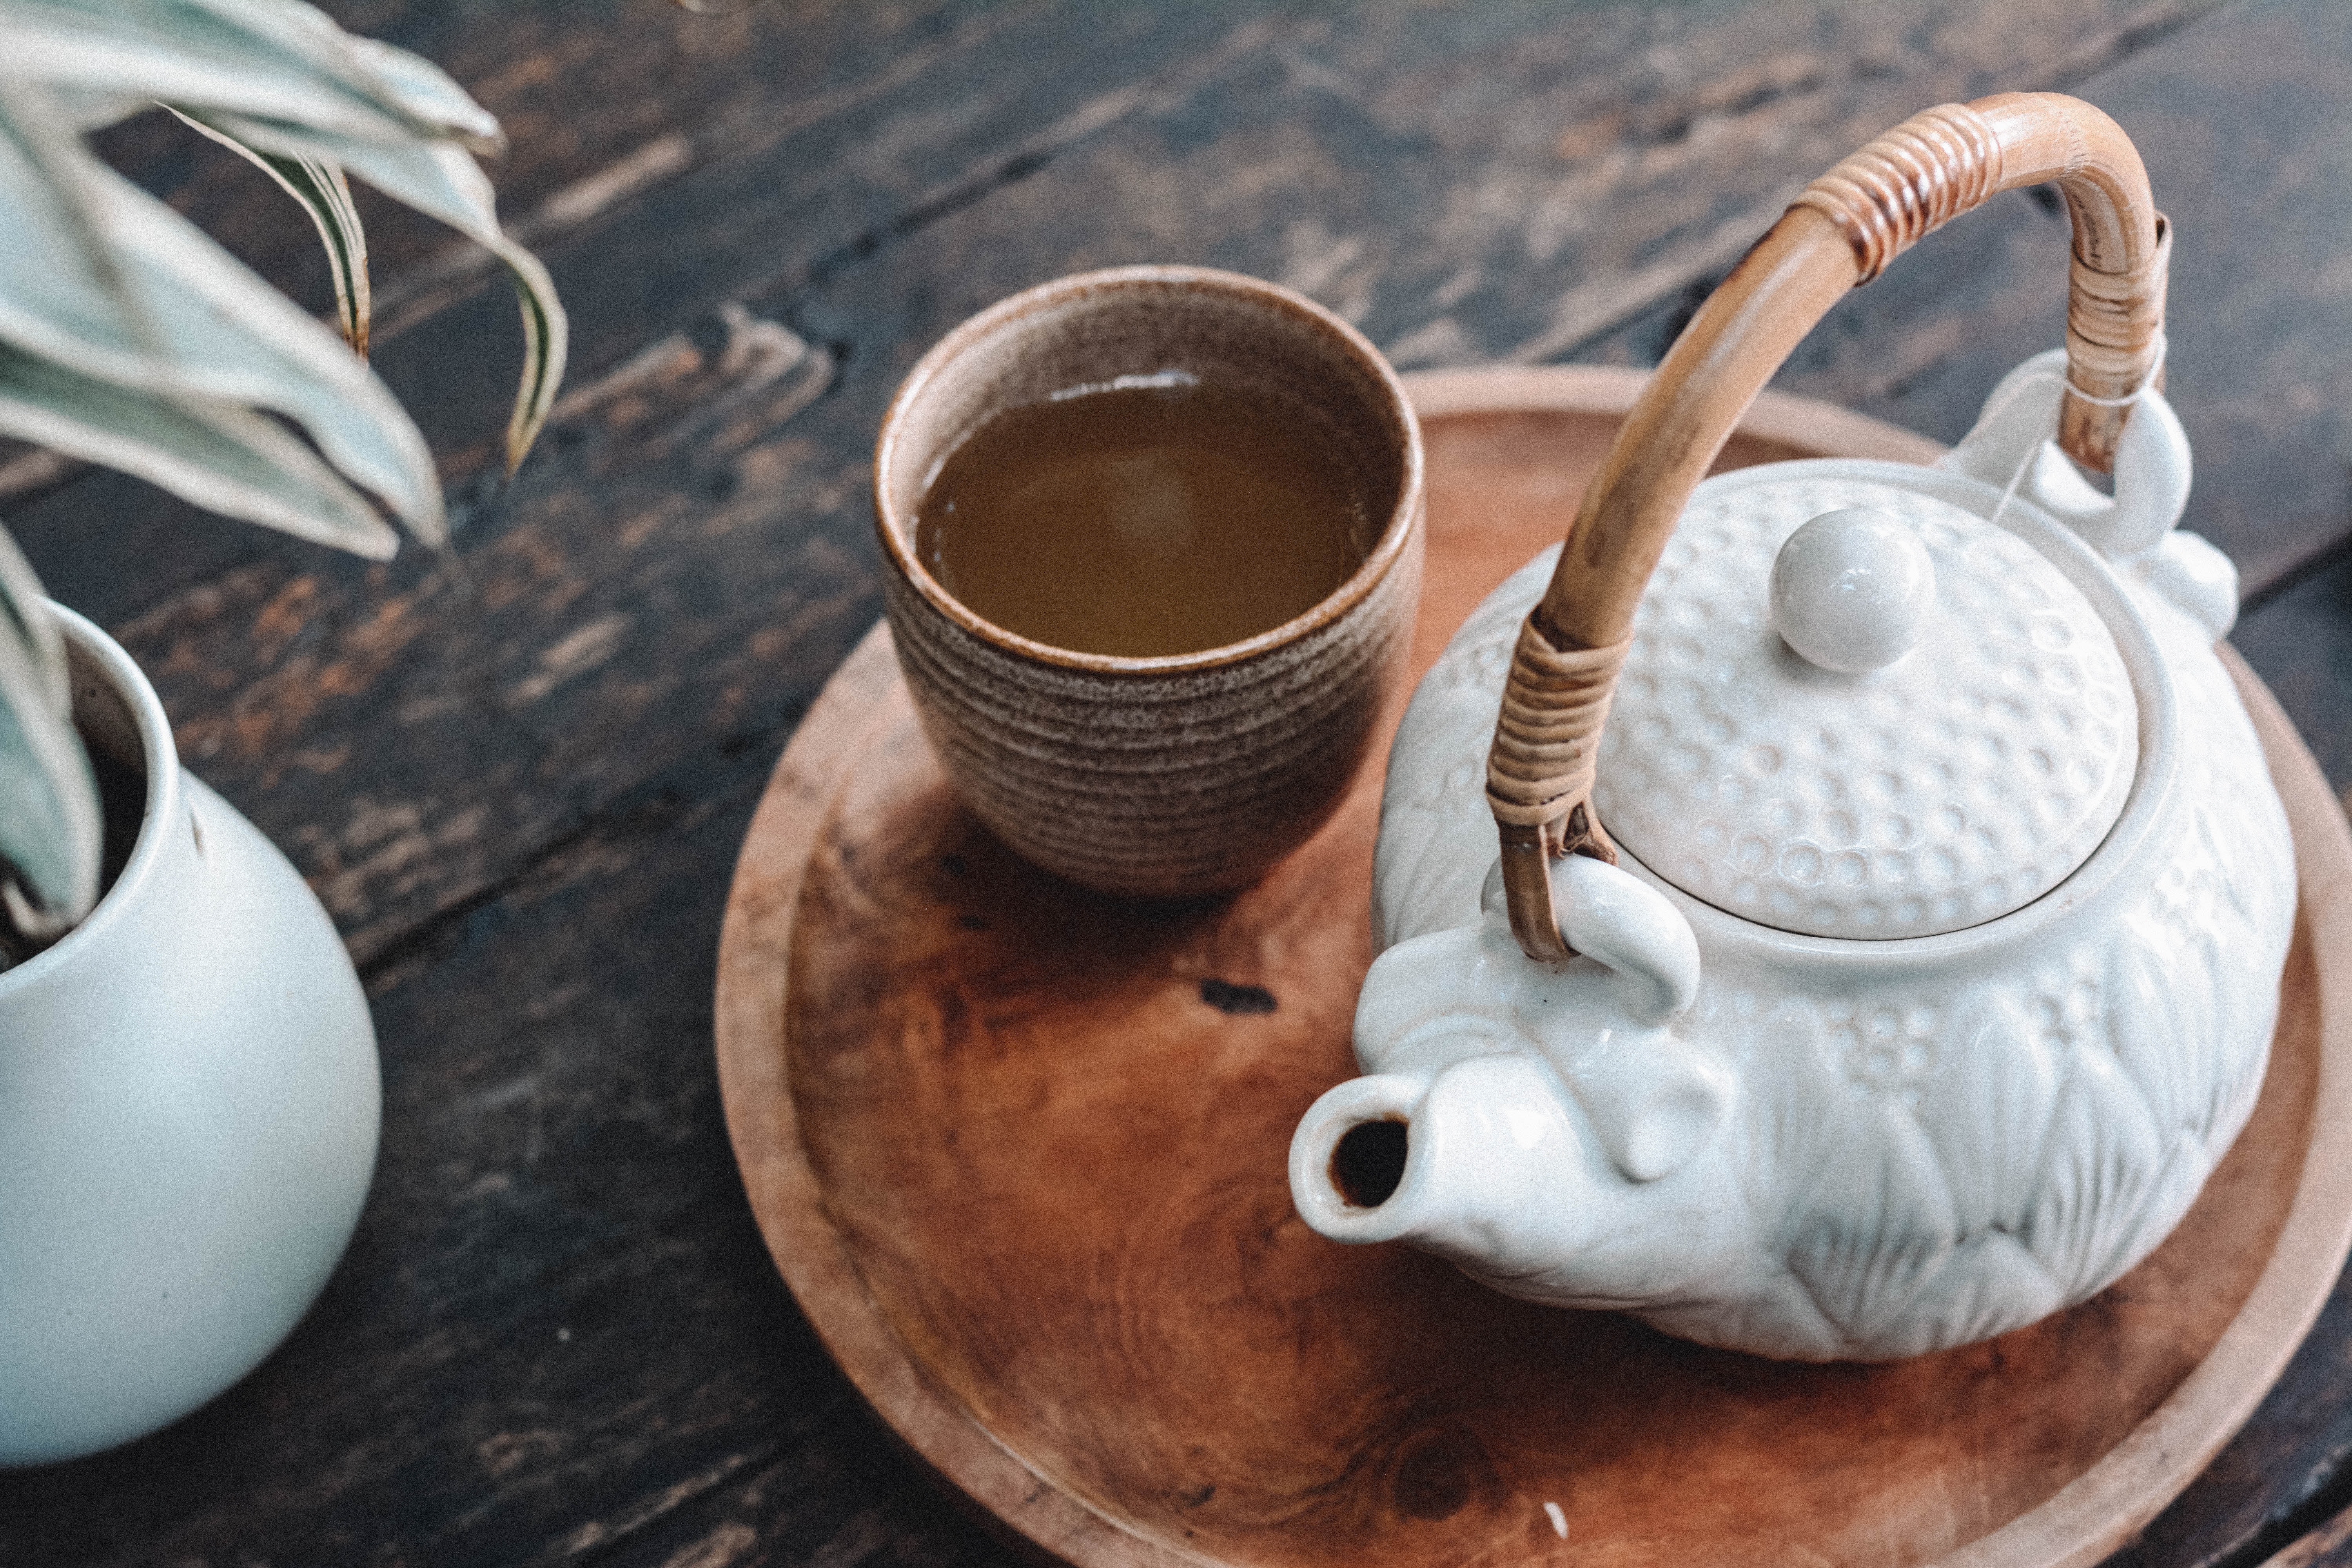 Tetera y taza con té, sobre una pequeña tabla de madera